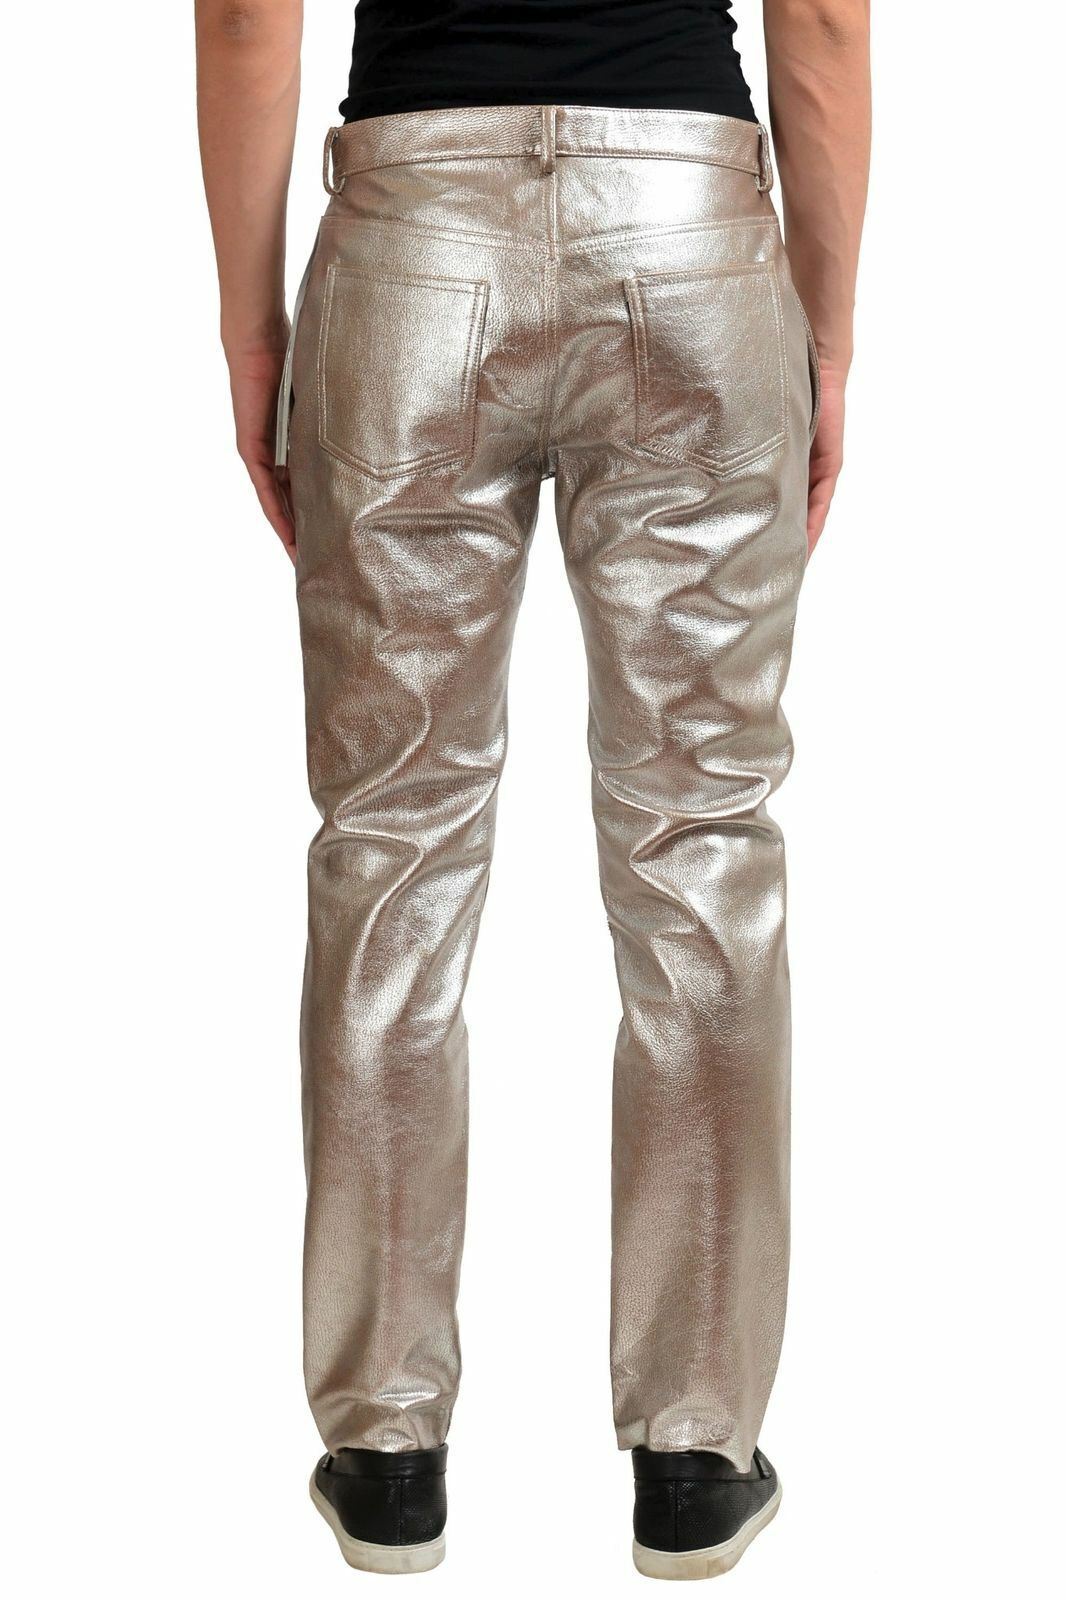 Maison Margiela 10 Men's 100% Leather Metallic Fringe Casual Pants Size 30  32